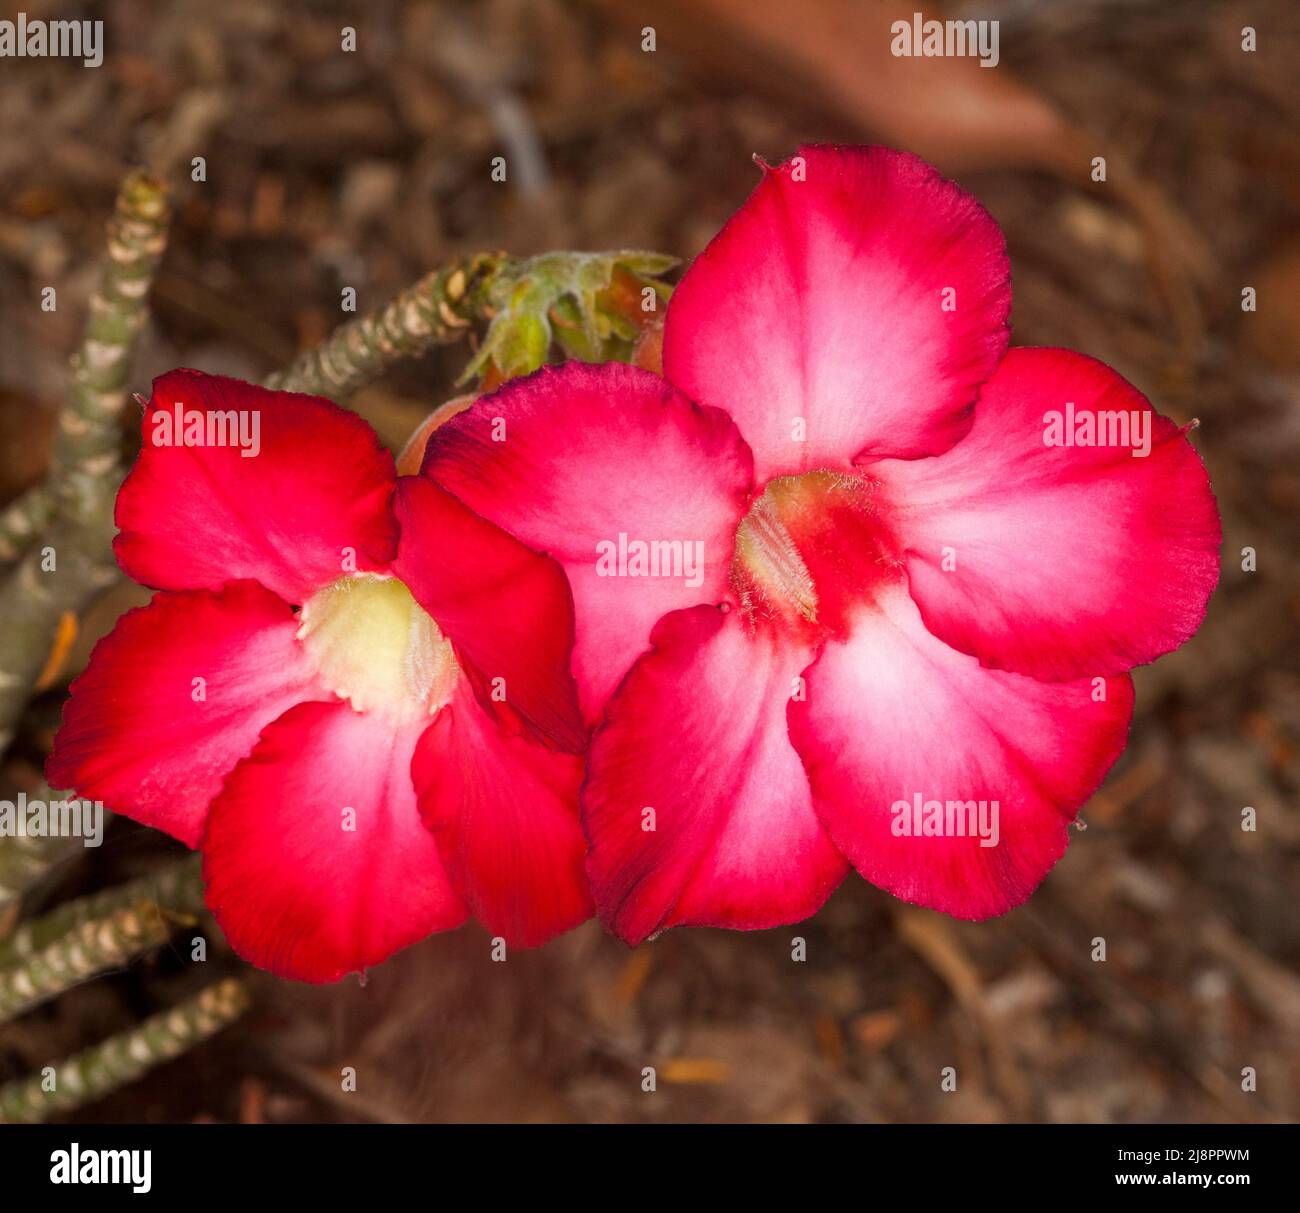 Superbes fleurs rouges et blanches vives de la Rose du désert africaine, Adenium obesum, arbuste succulent tolérant à la sécheresse, sur fond marron Banque D'Images